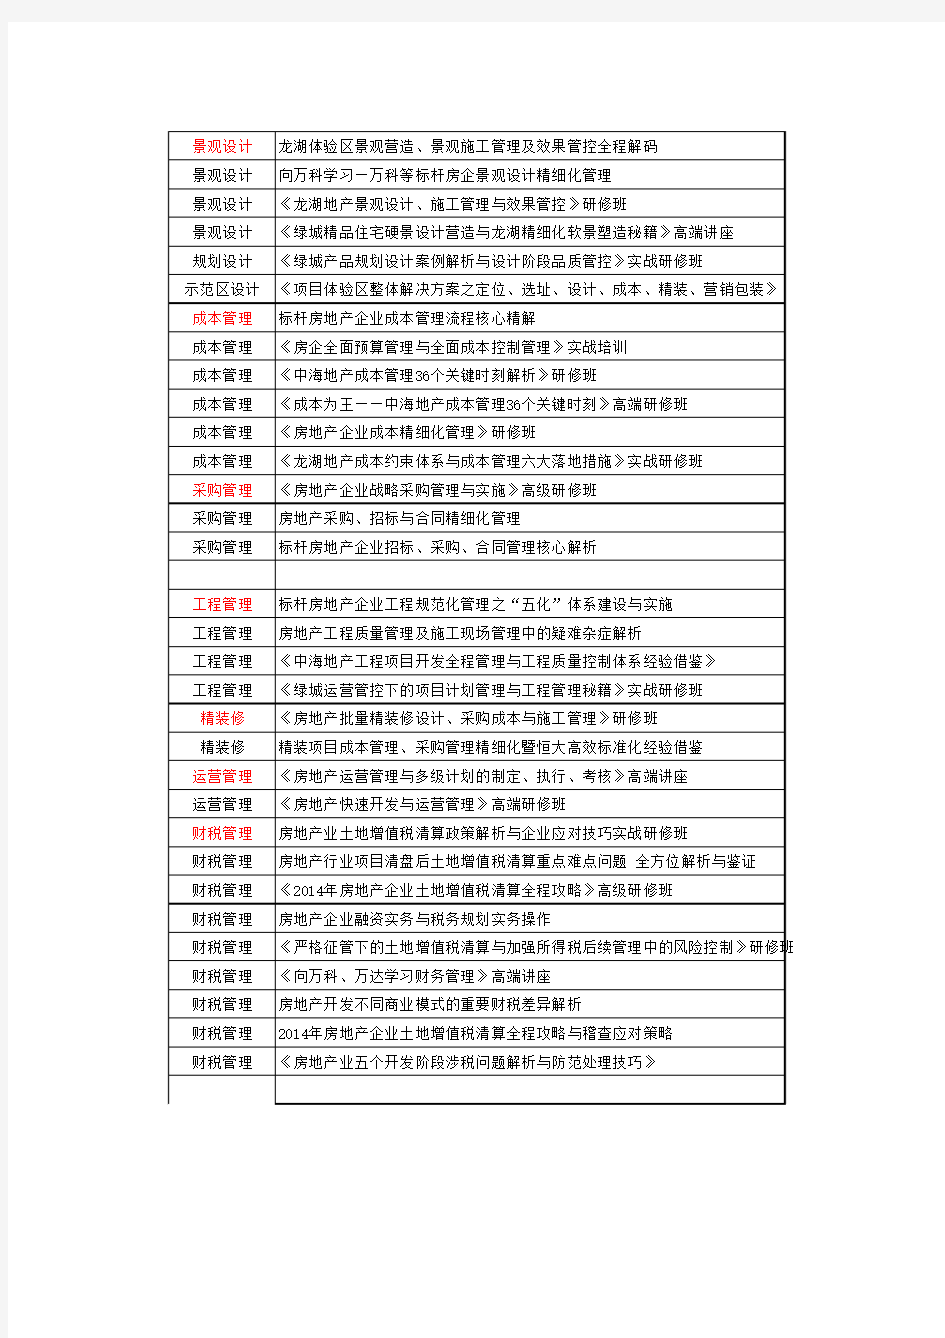 2014年5月房地产精品公开课课程安排表(共计82场)——中国房训网